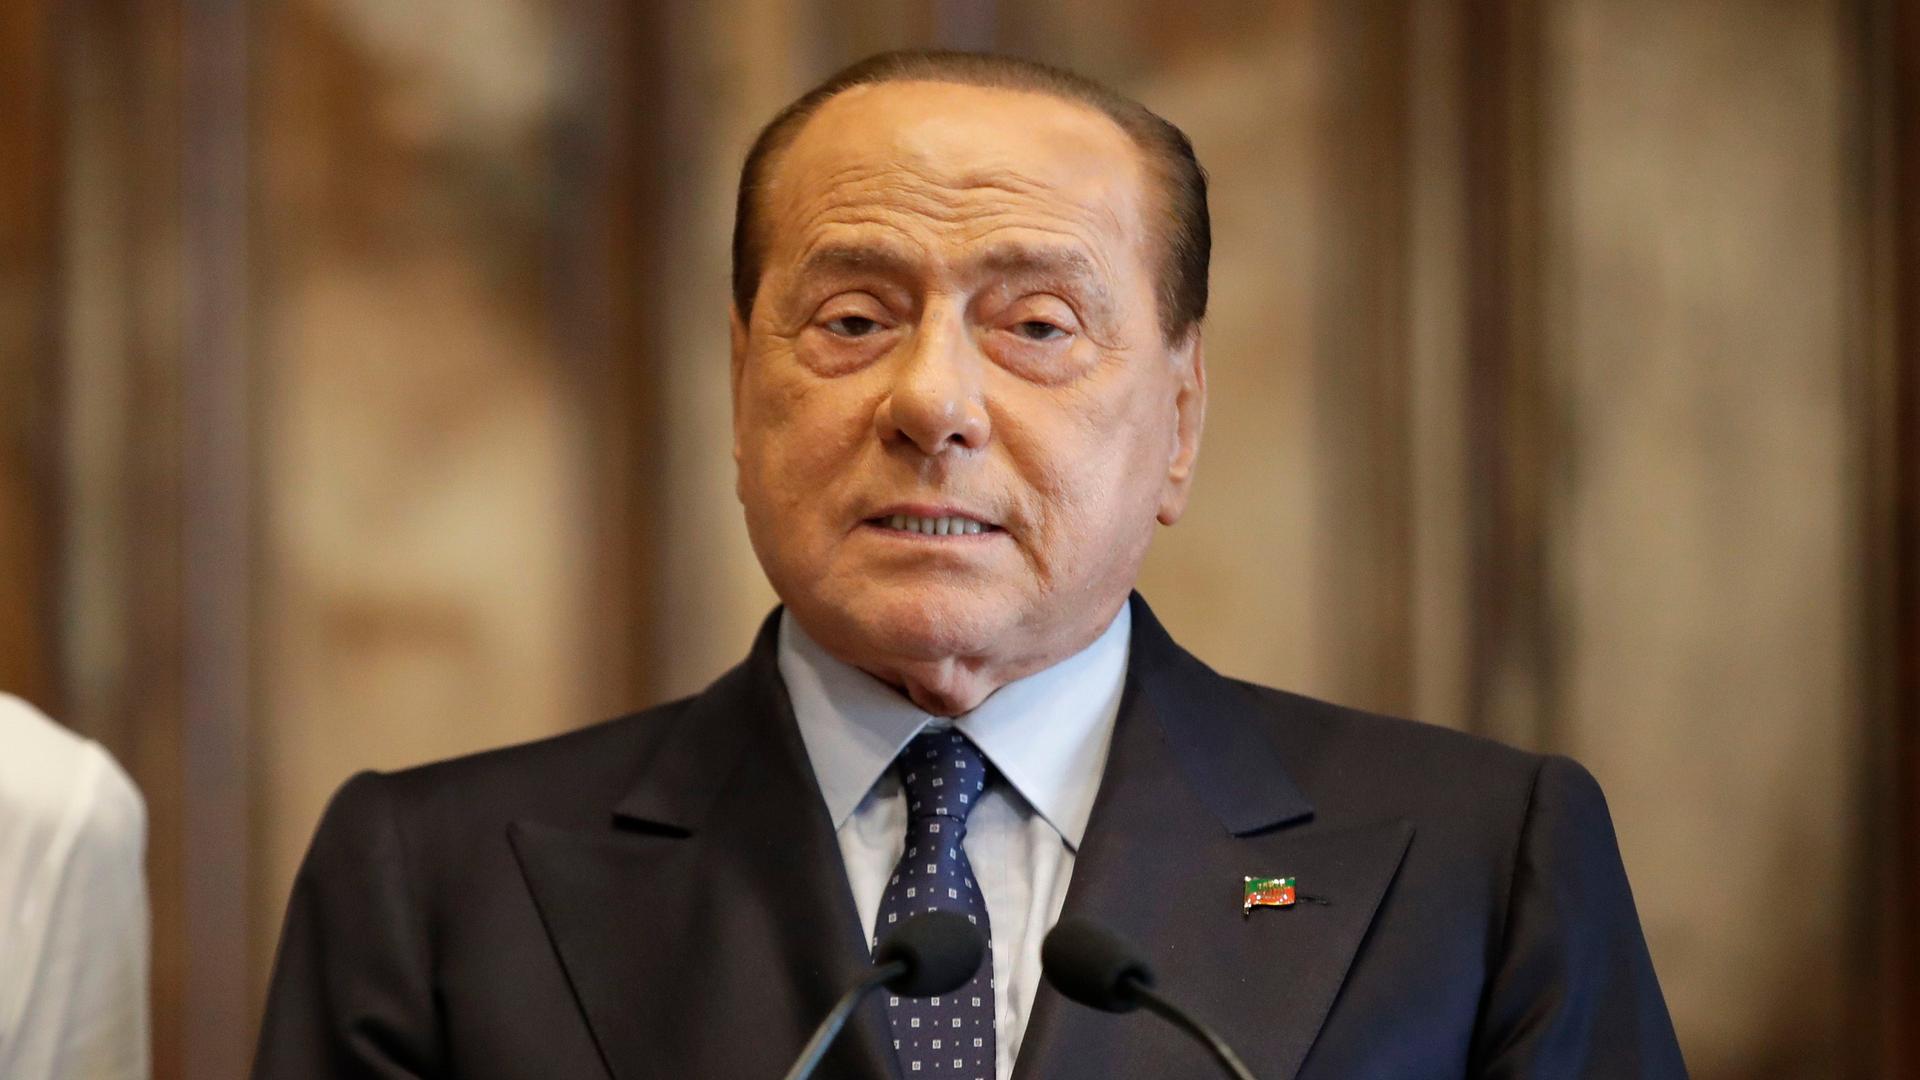 Silvio Berlusconi steht vor Mikrofonen. Er trägt einen Anzug.